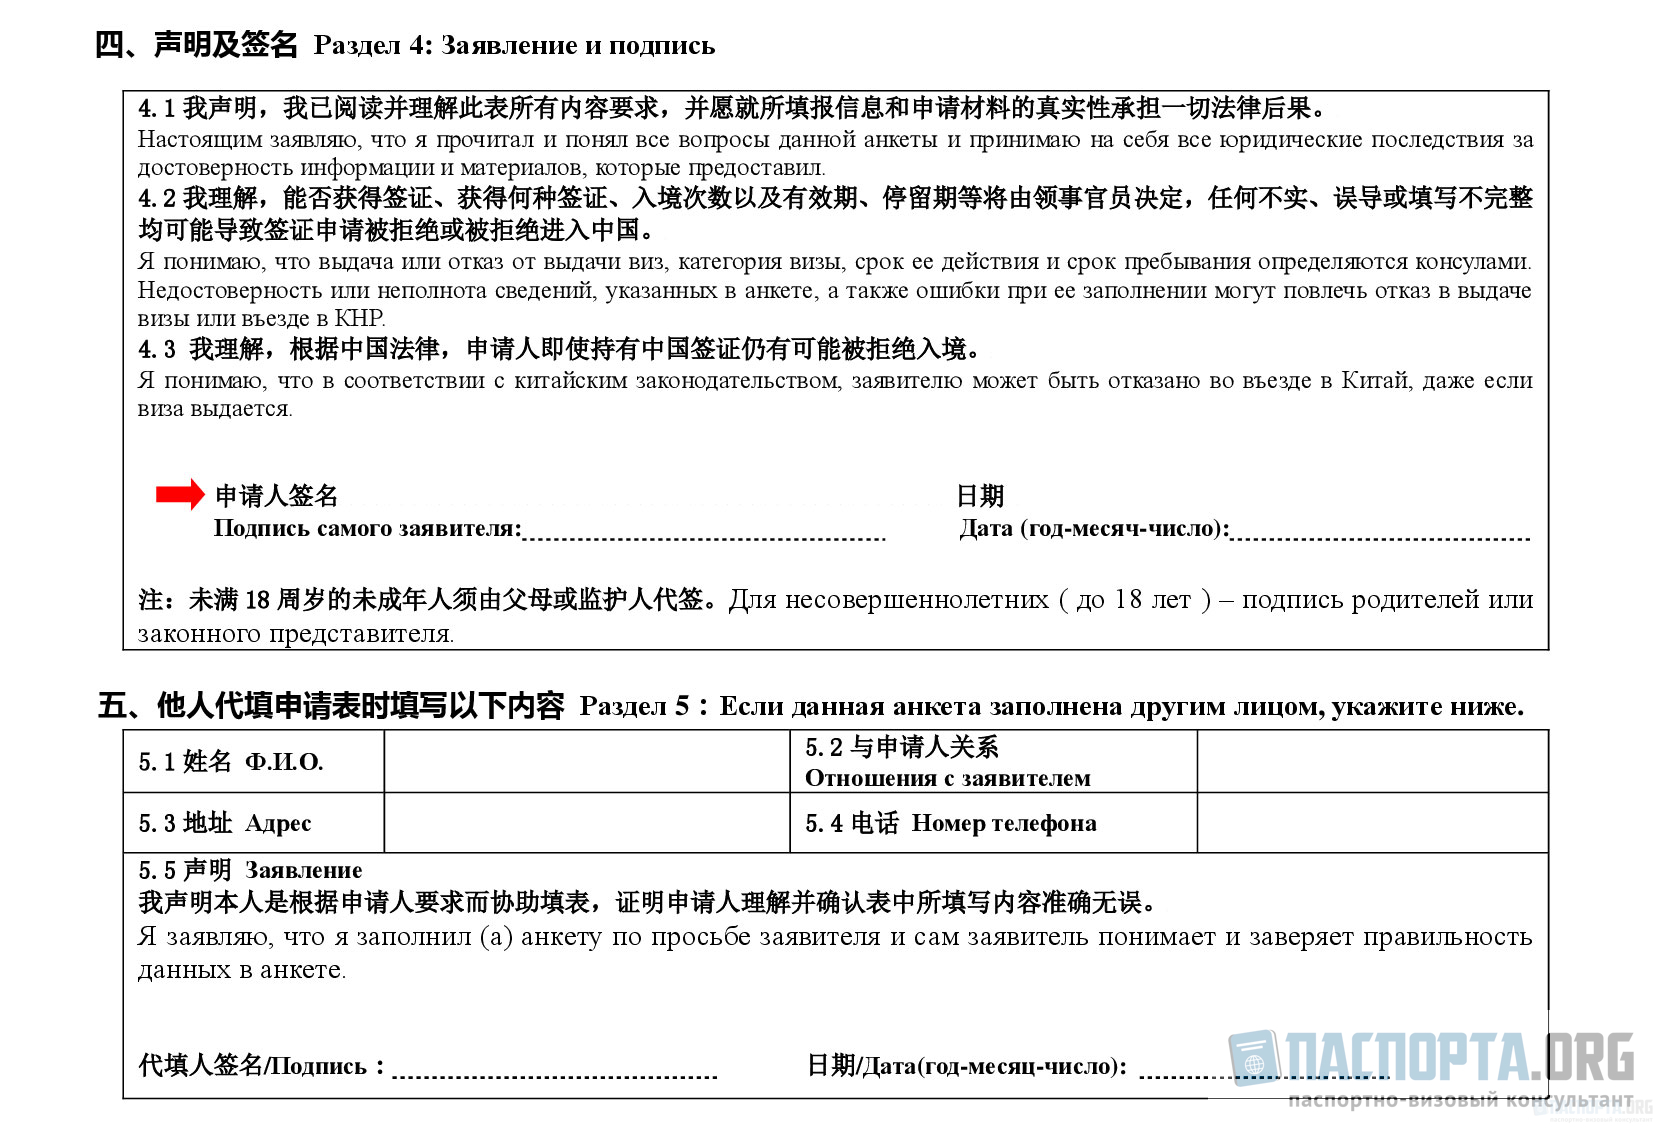 Пример заполнения анкеты на визу в Китай. Раздел 4: Заявление и подпись